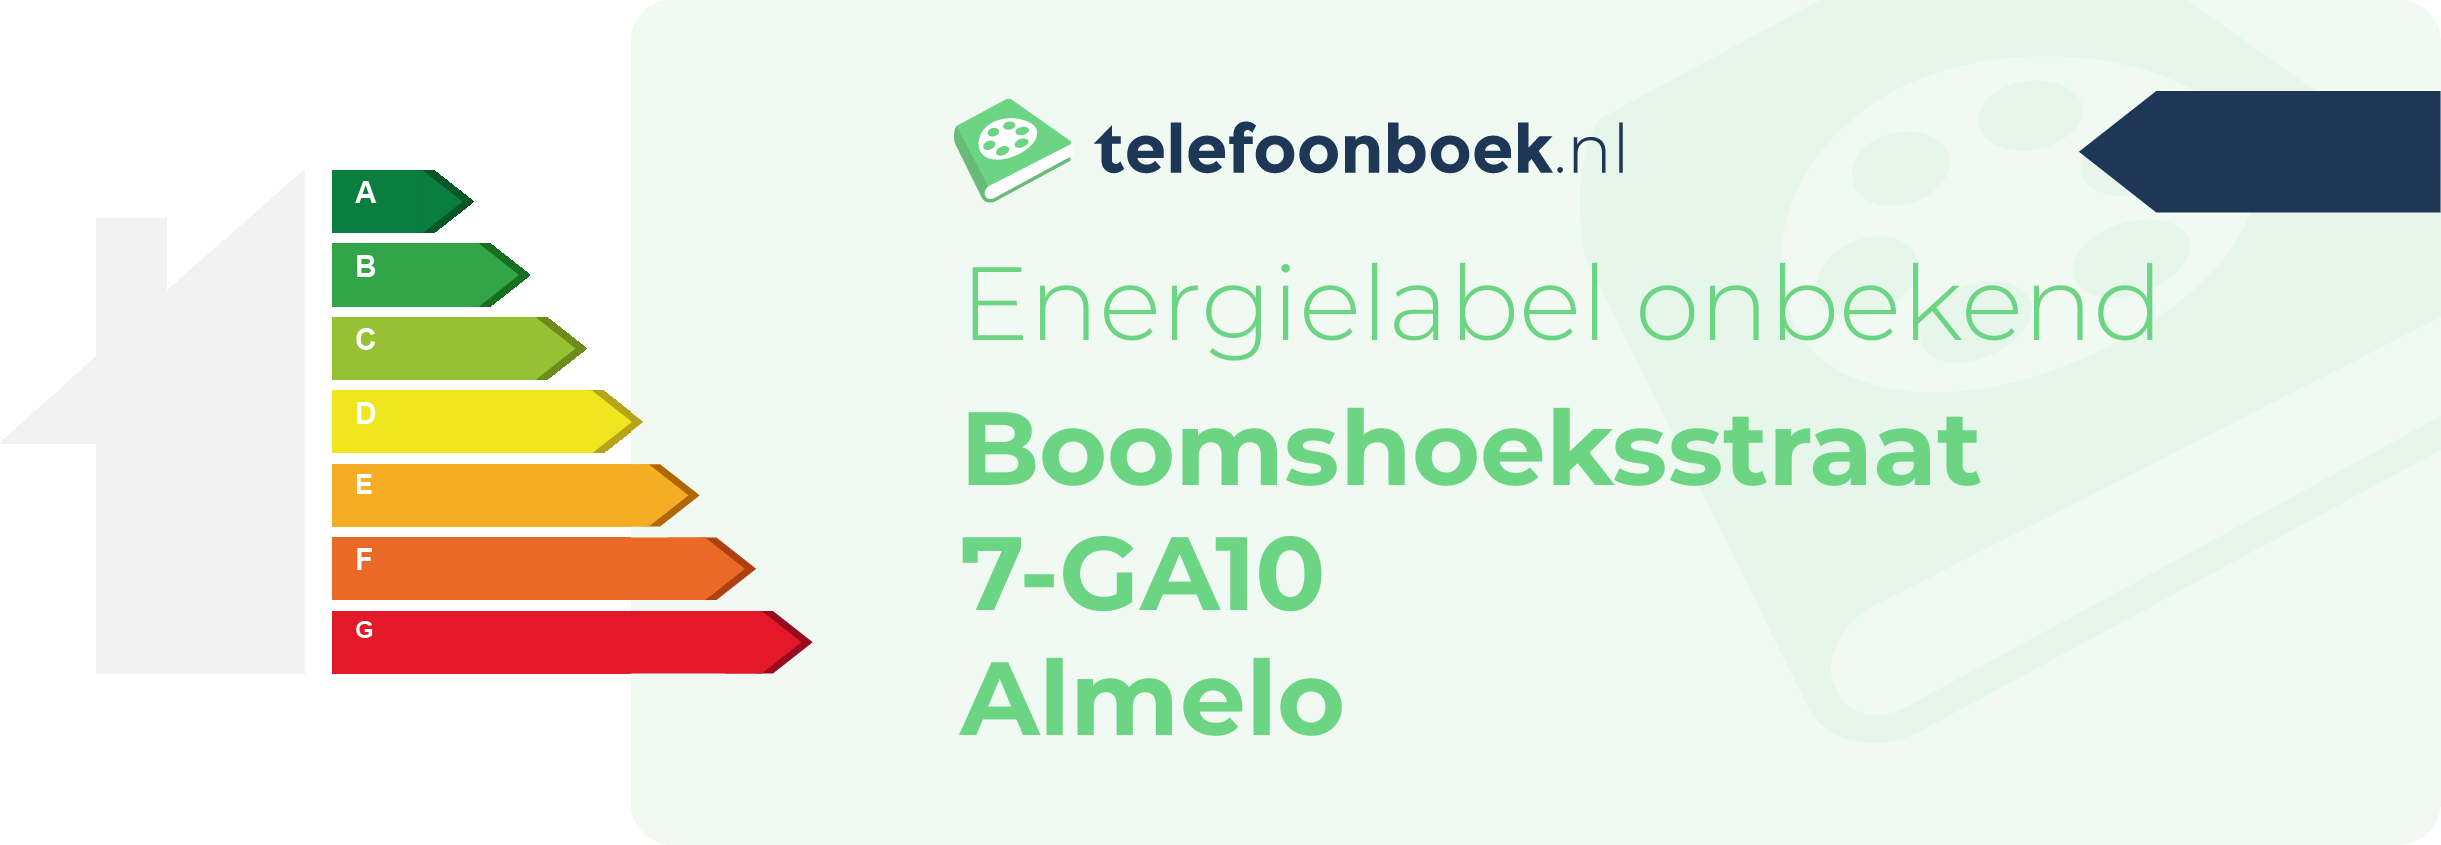 Energielabel Boomshoeksstraat 7-GA10 Almelo